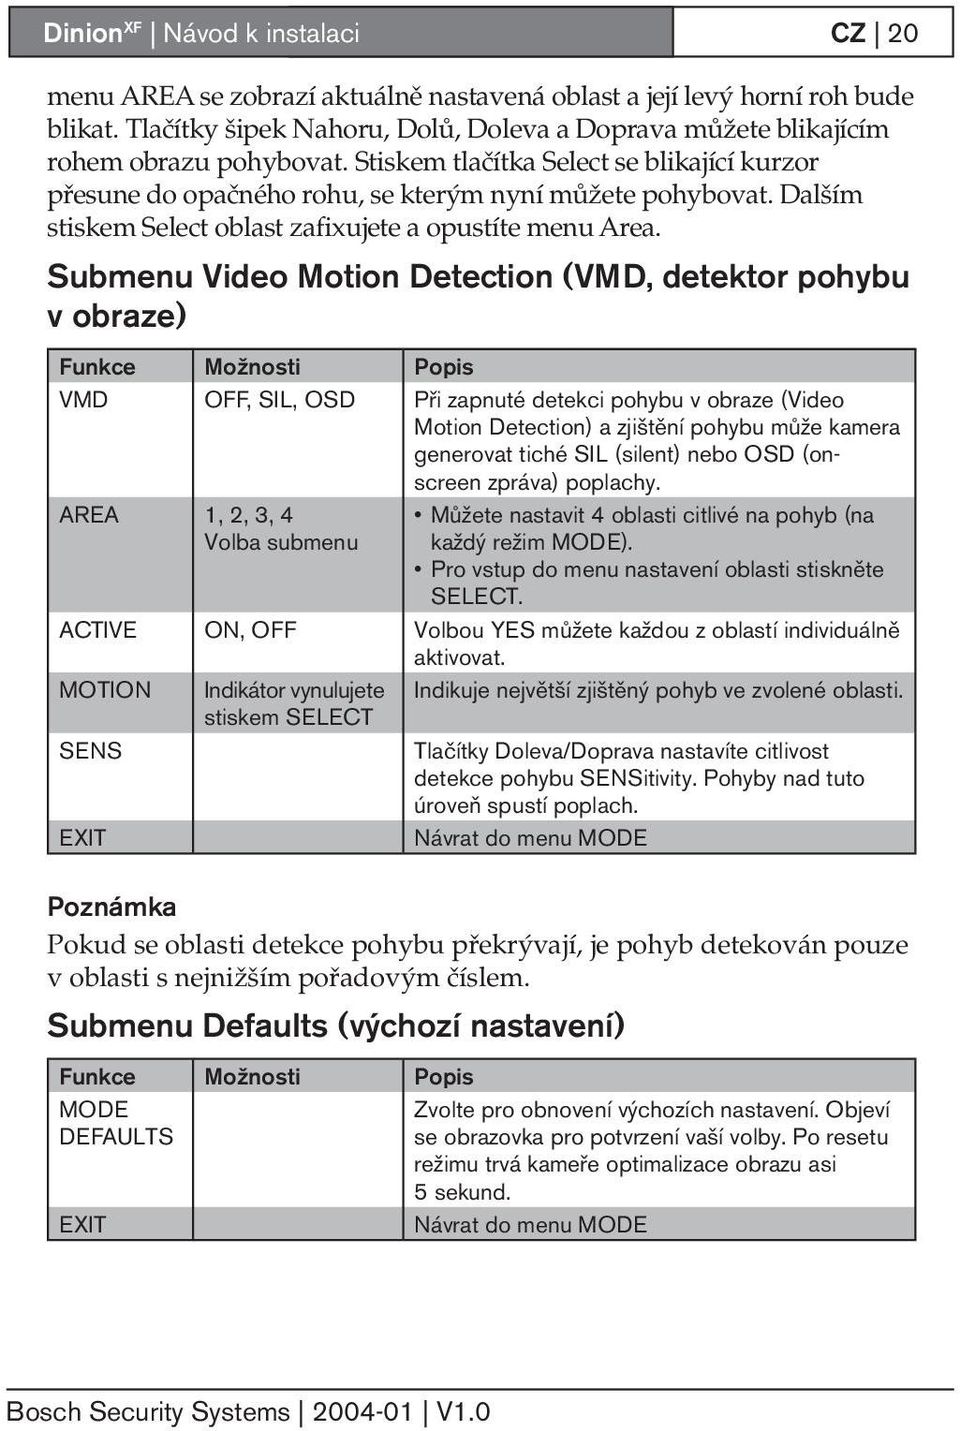 Submenu Video Motion Detection (VMD, detektor pohybu v obraze) VMD OFF, SIL, OSD Při zapnuté detekci pohybu v obraze (Video Motion Detection) a zjištění pohybu může kamera generovat tiché SIL